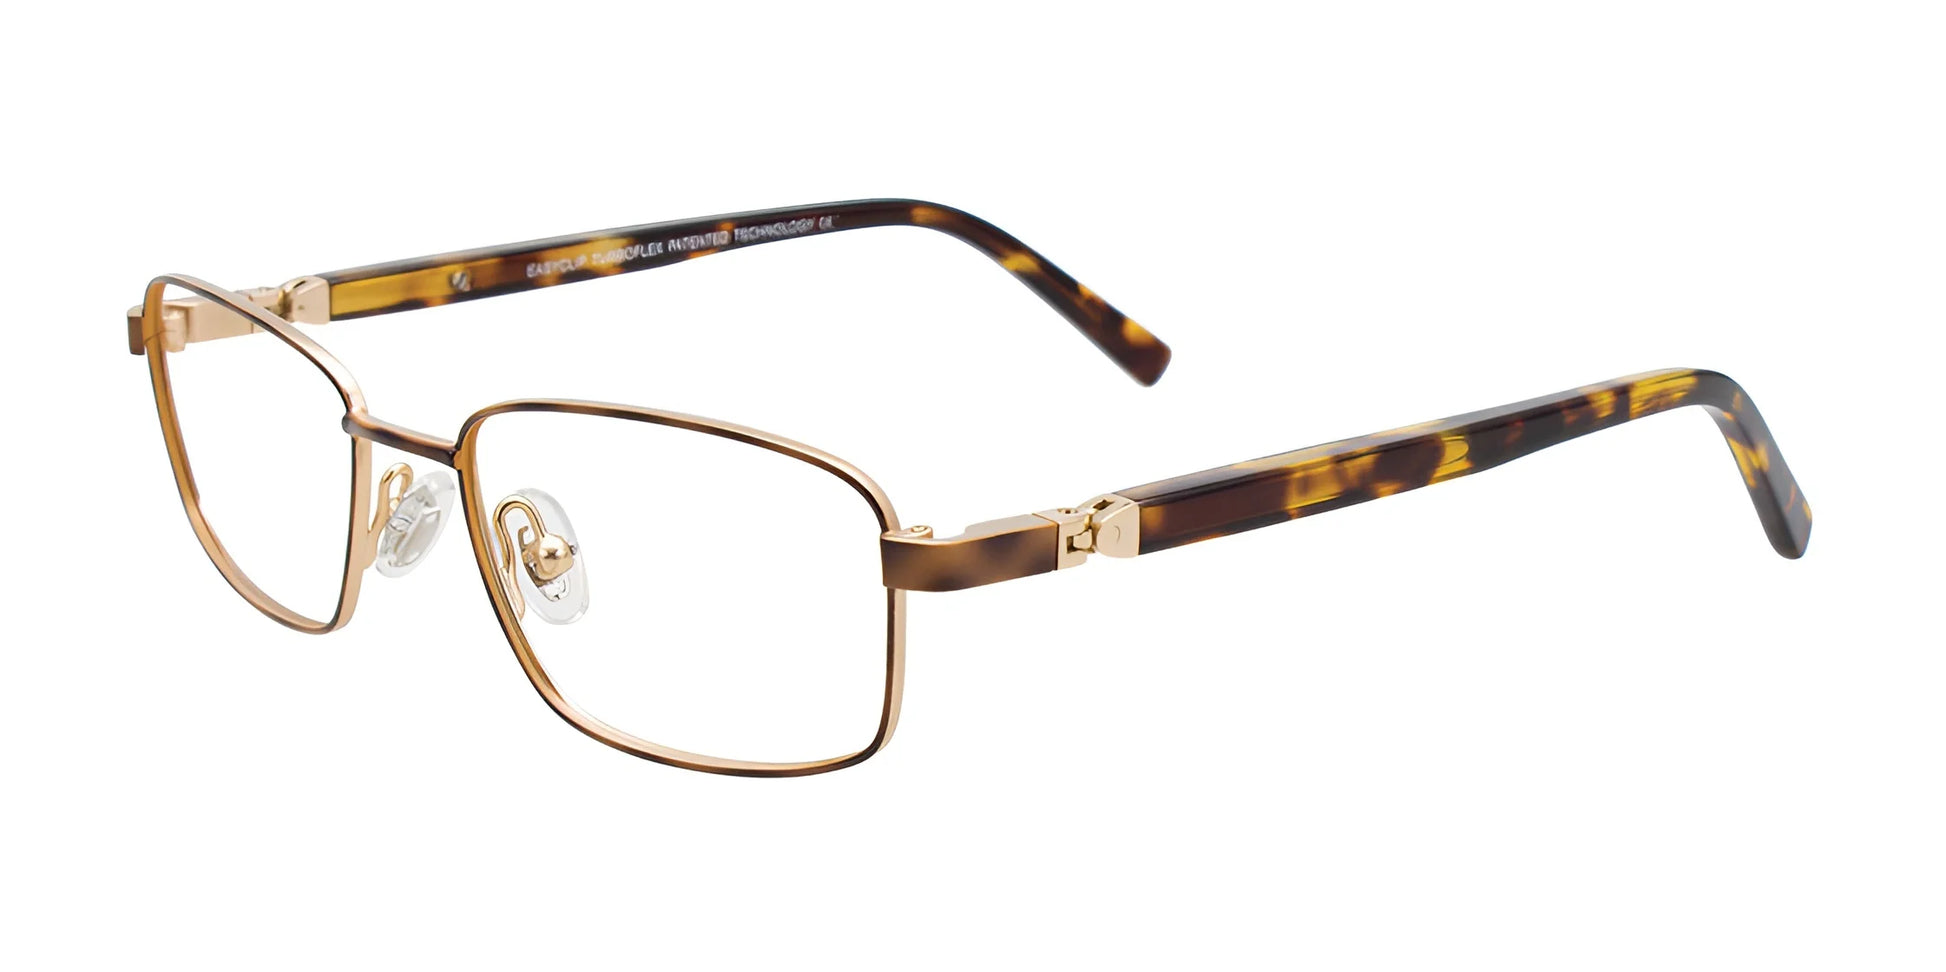 EasyClip EC558 Eyeglasses Tortoise & Soft Gold / Tortoise